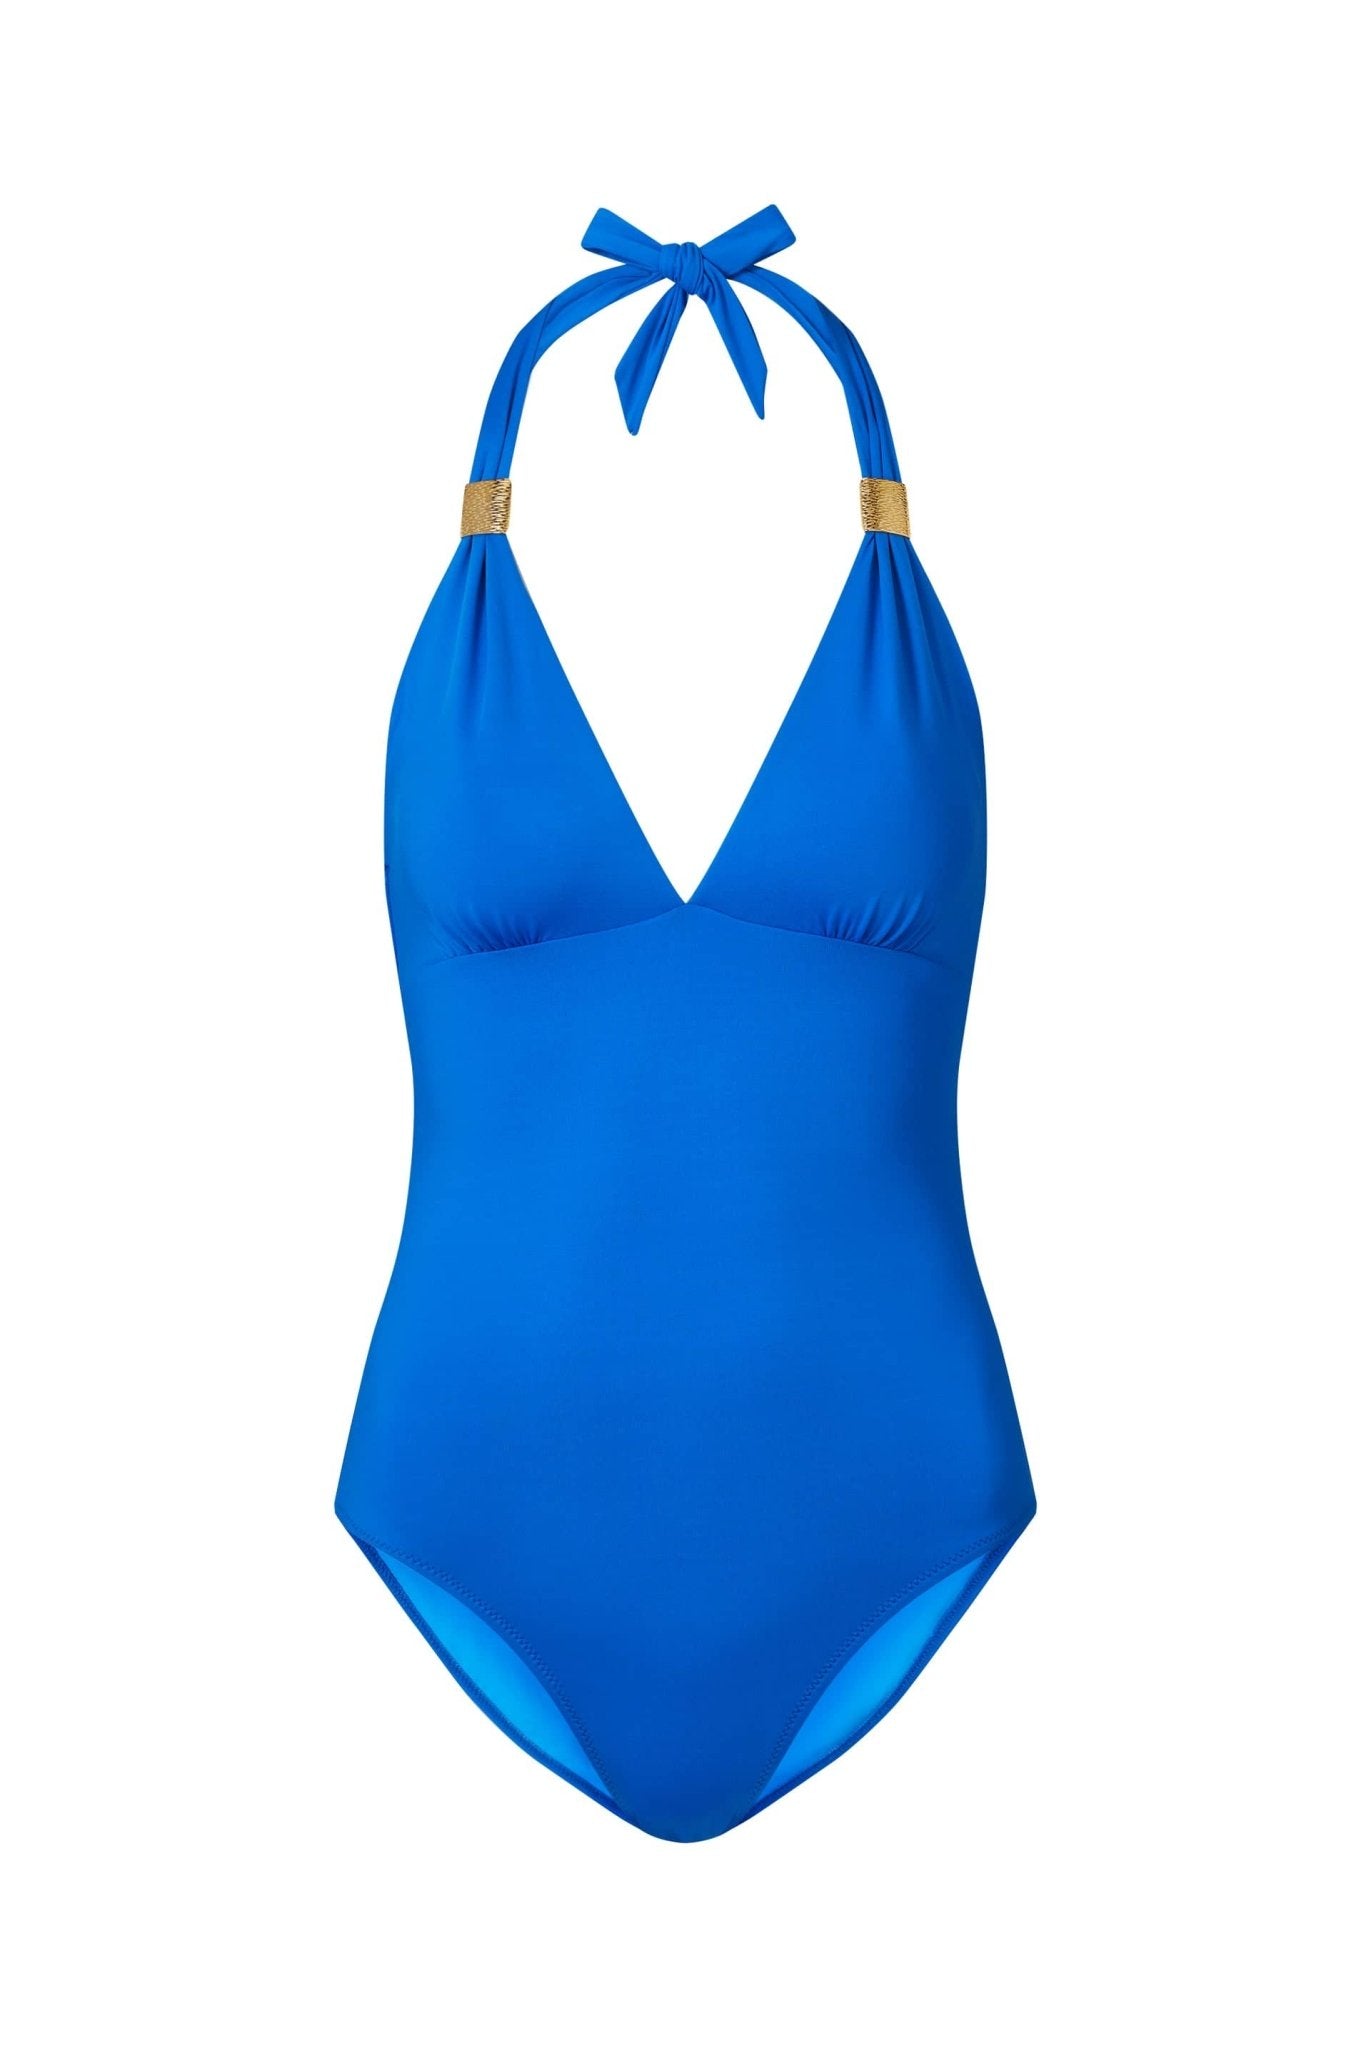 The Baths Blue Swimsuit | Luxury Swimsuit – Heidi Klein - UK Store